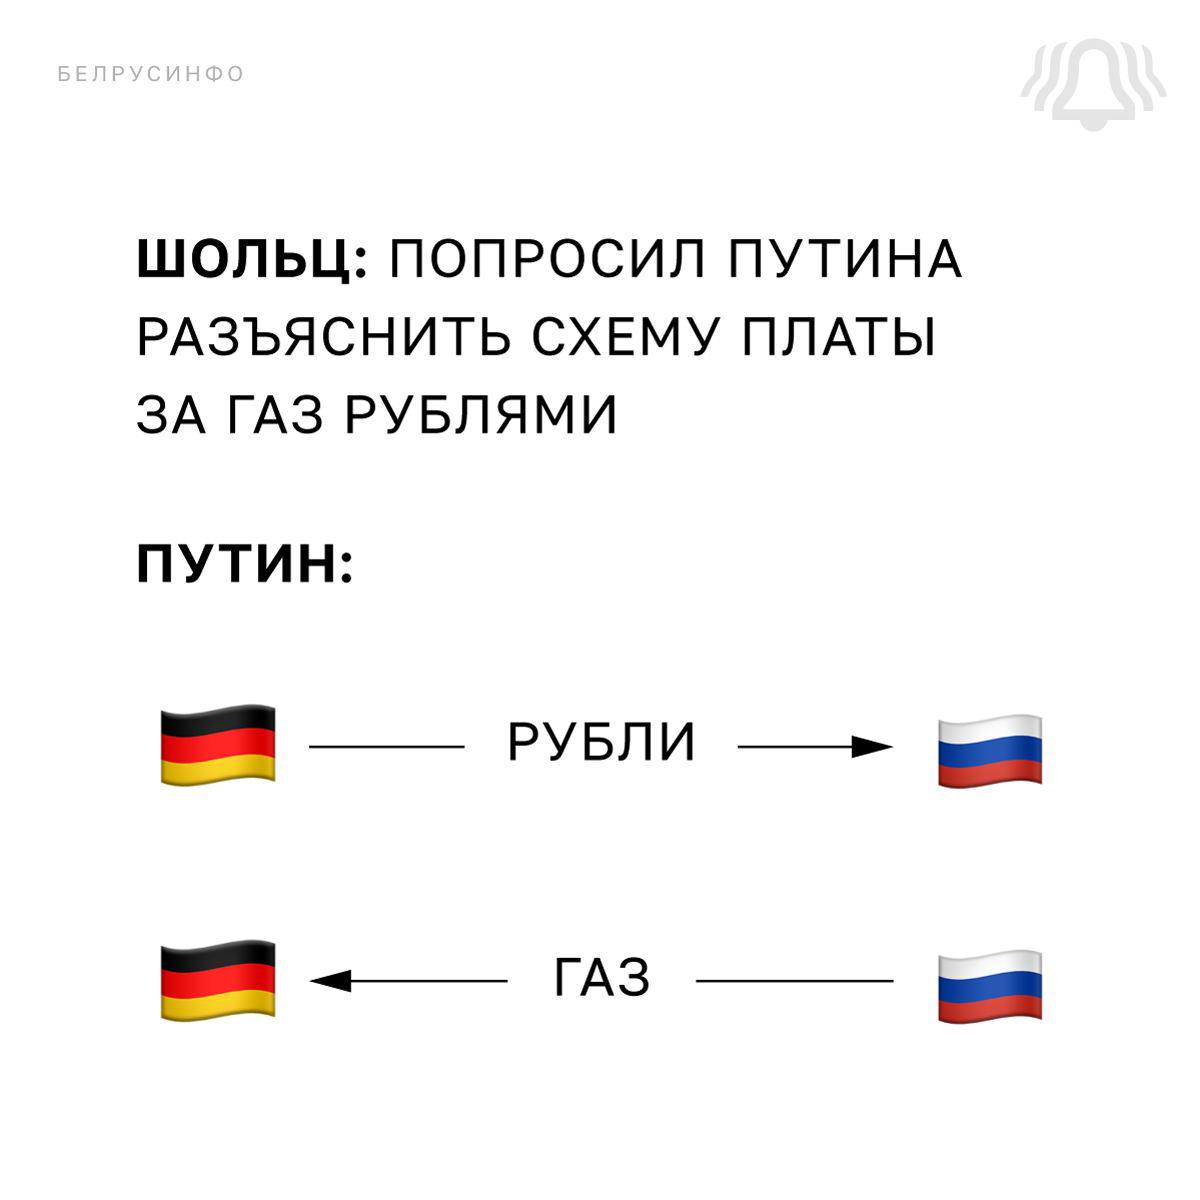 Схема оплаты газа за рубли